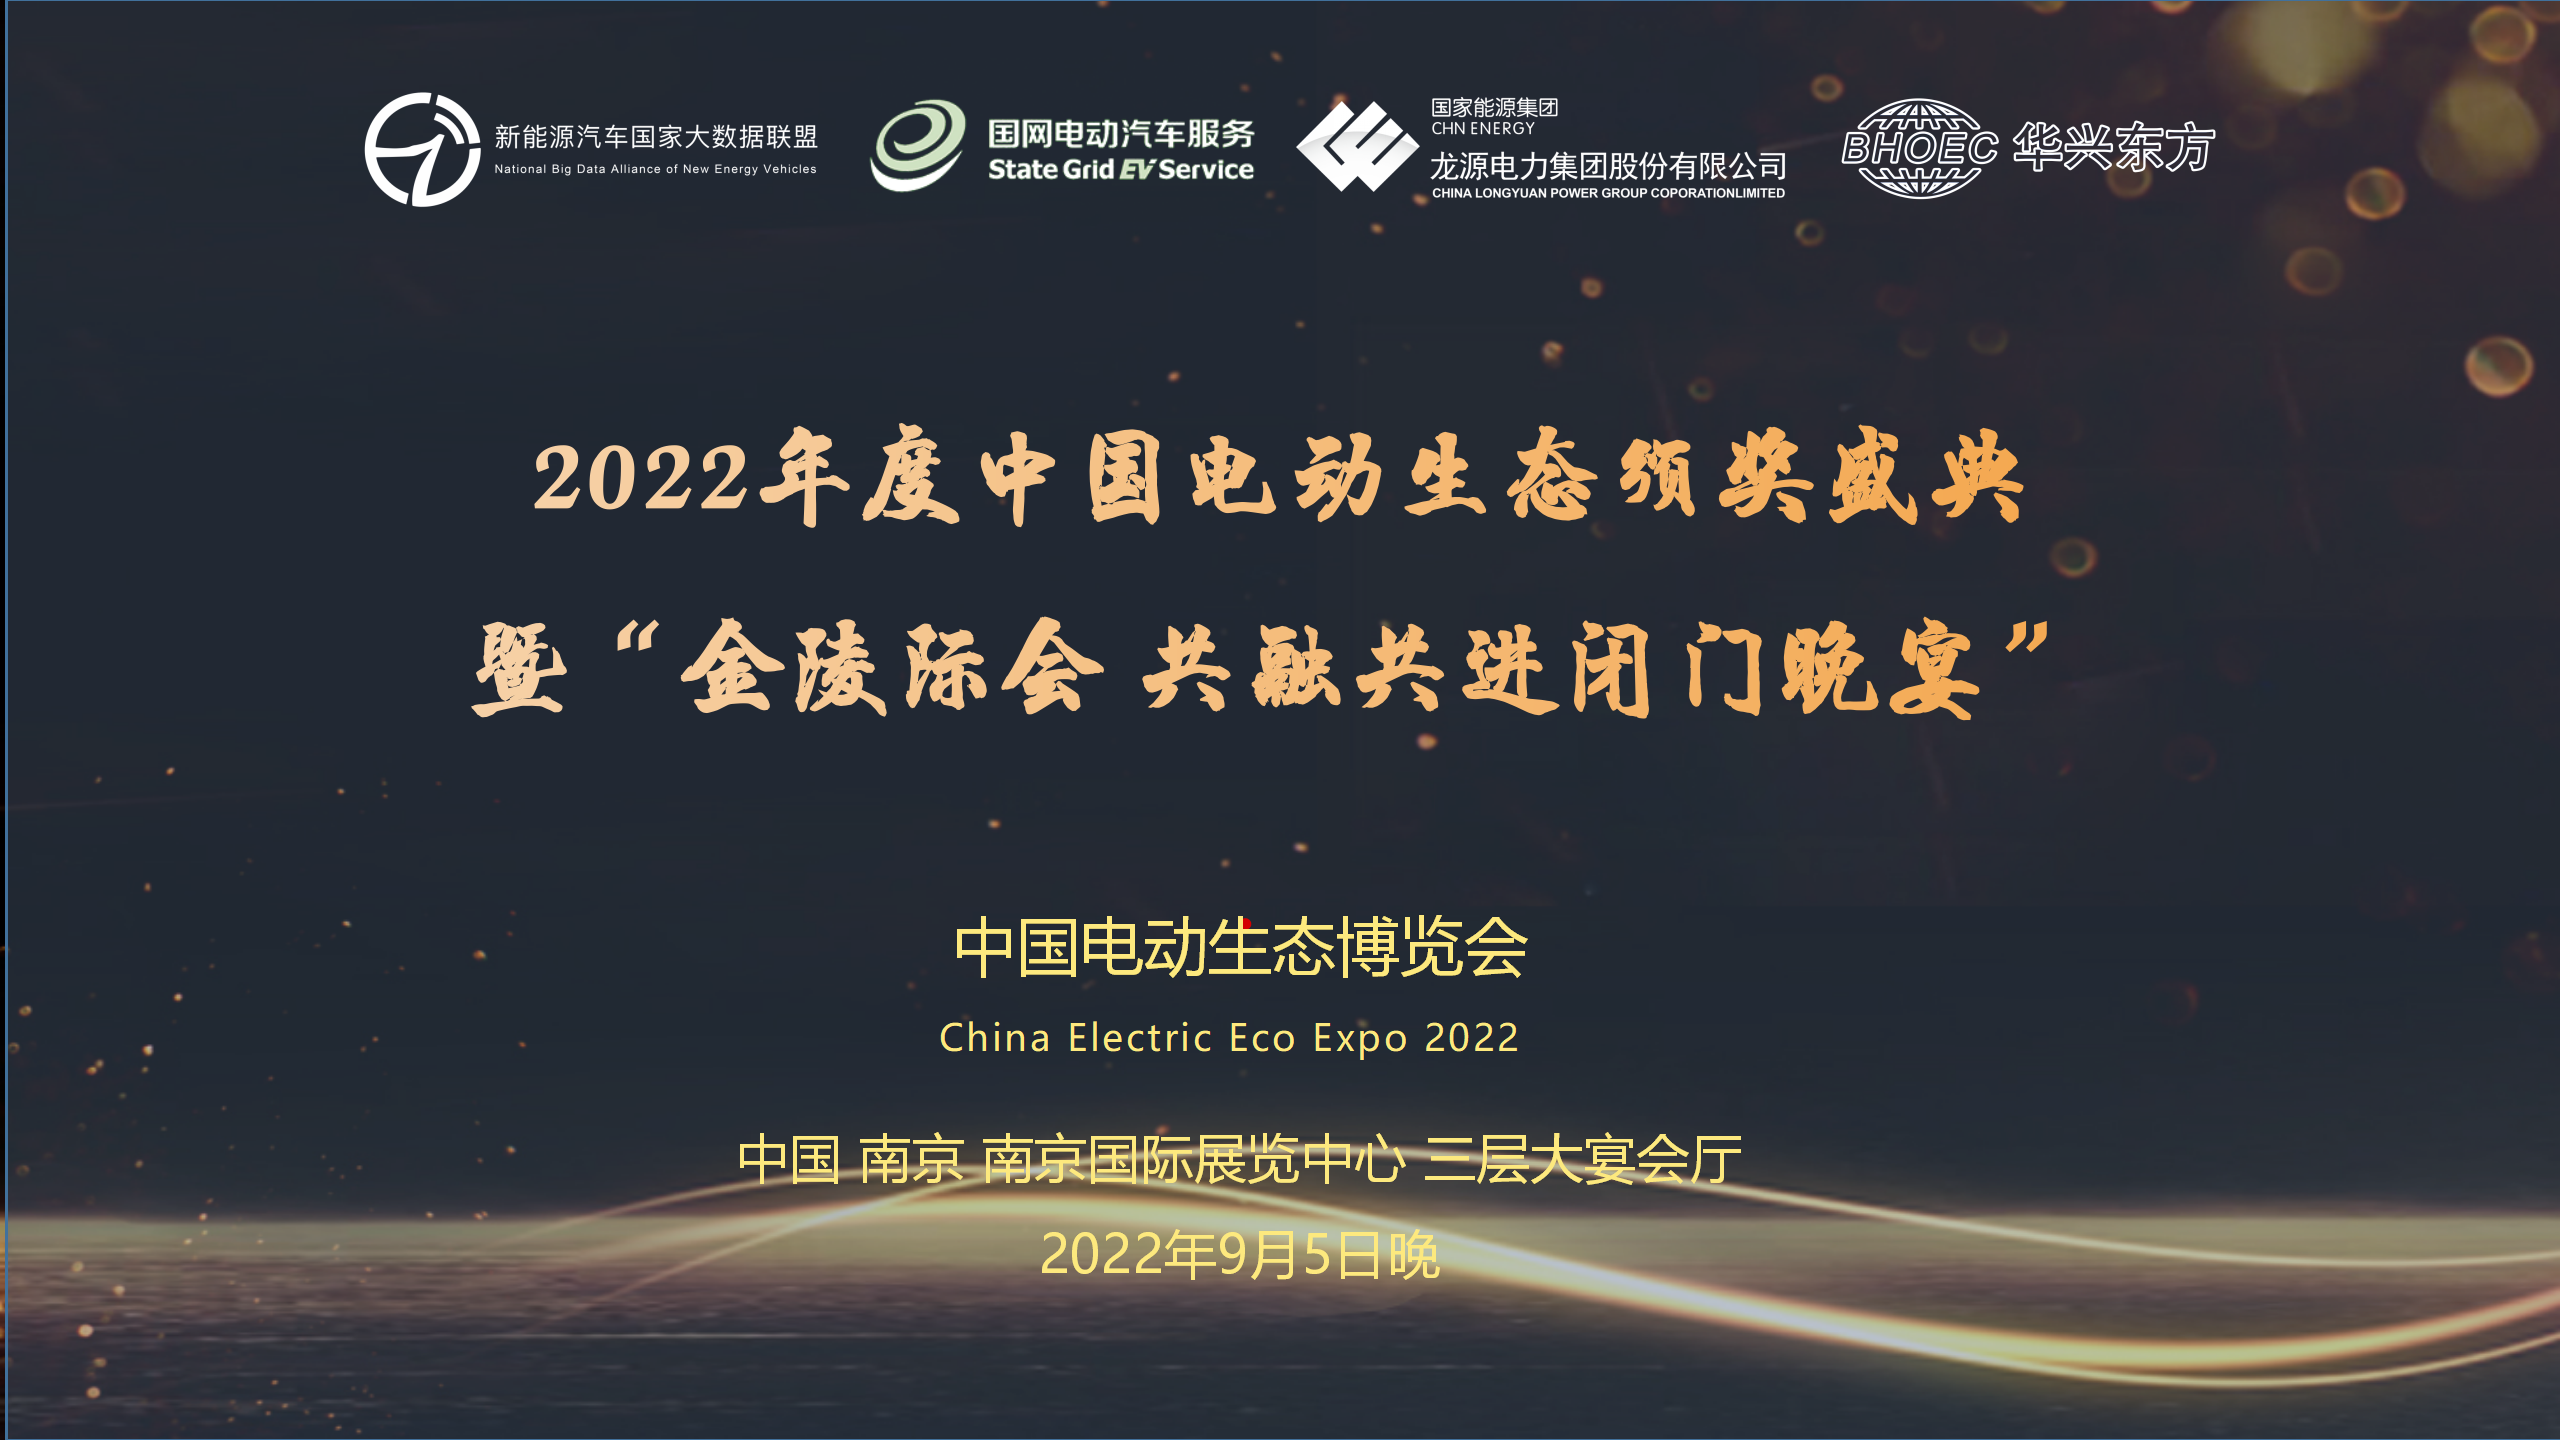 “2022年度中国电动生态颁奖盛典”